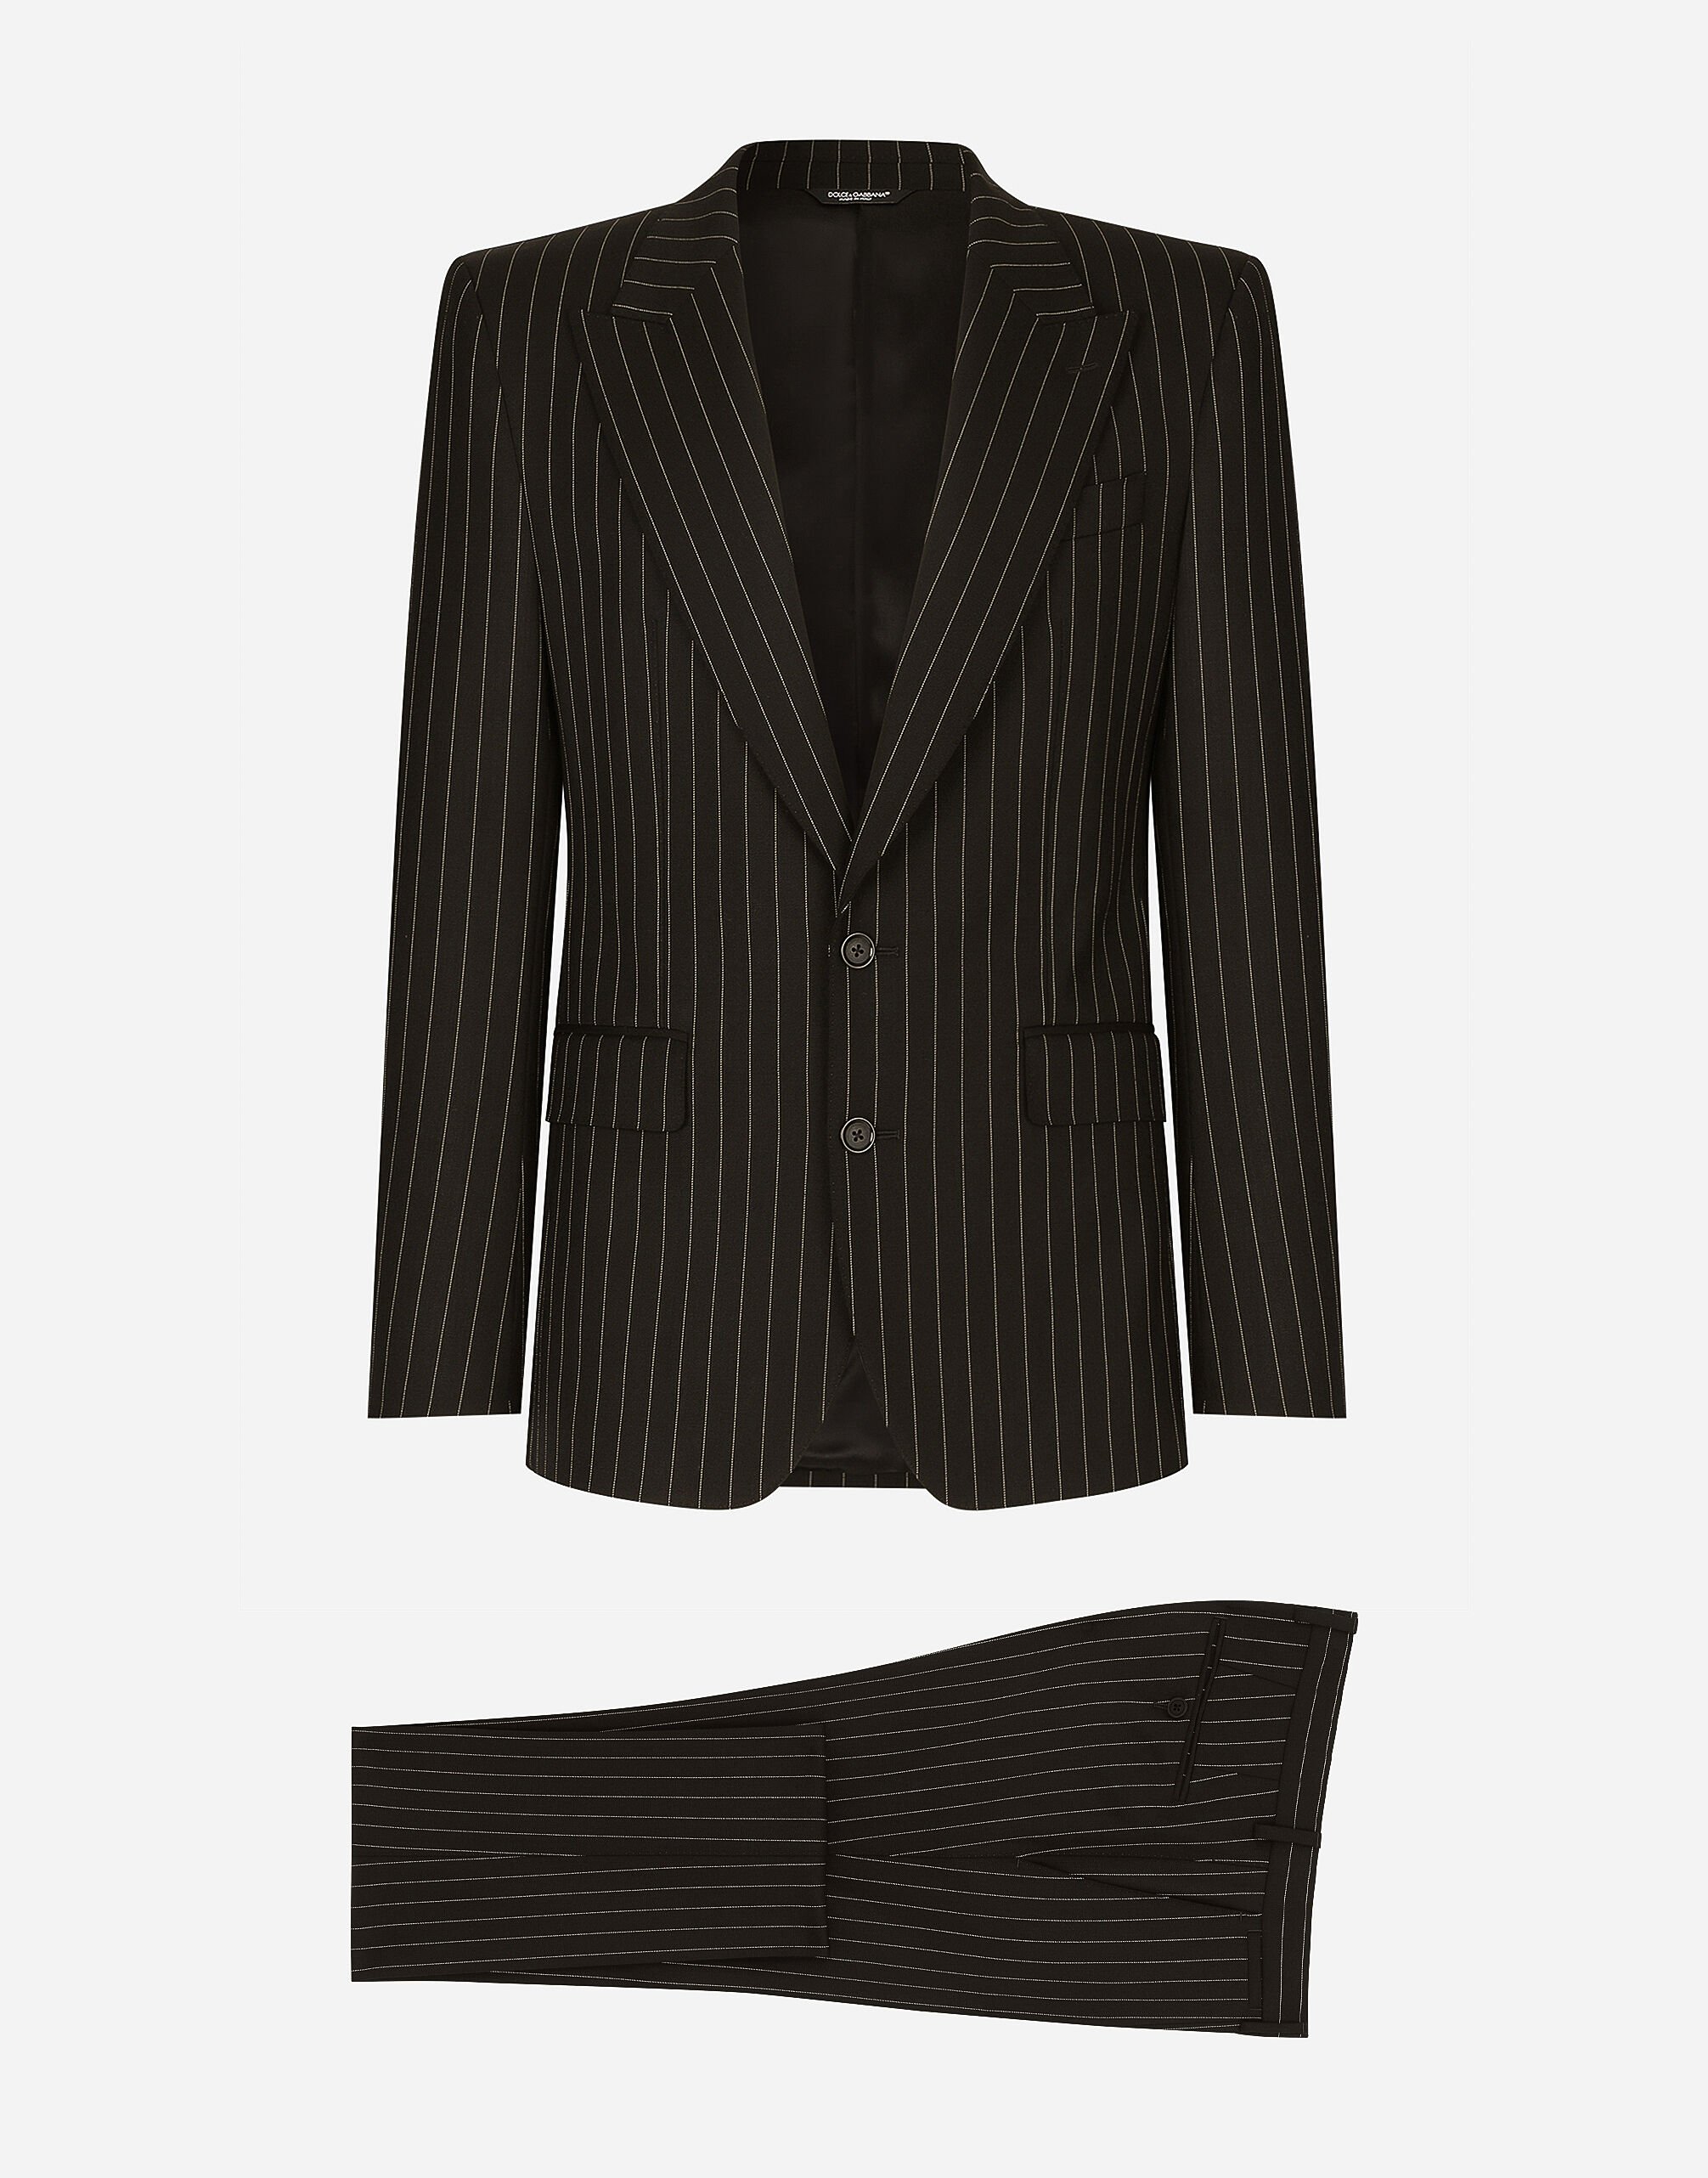 Dolce & Gabbana Traje Sicilia de botonadura sencilla en lana elástica con rayas diplomáticas Negro GK0RMTGG059